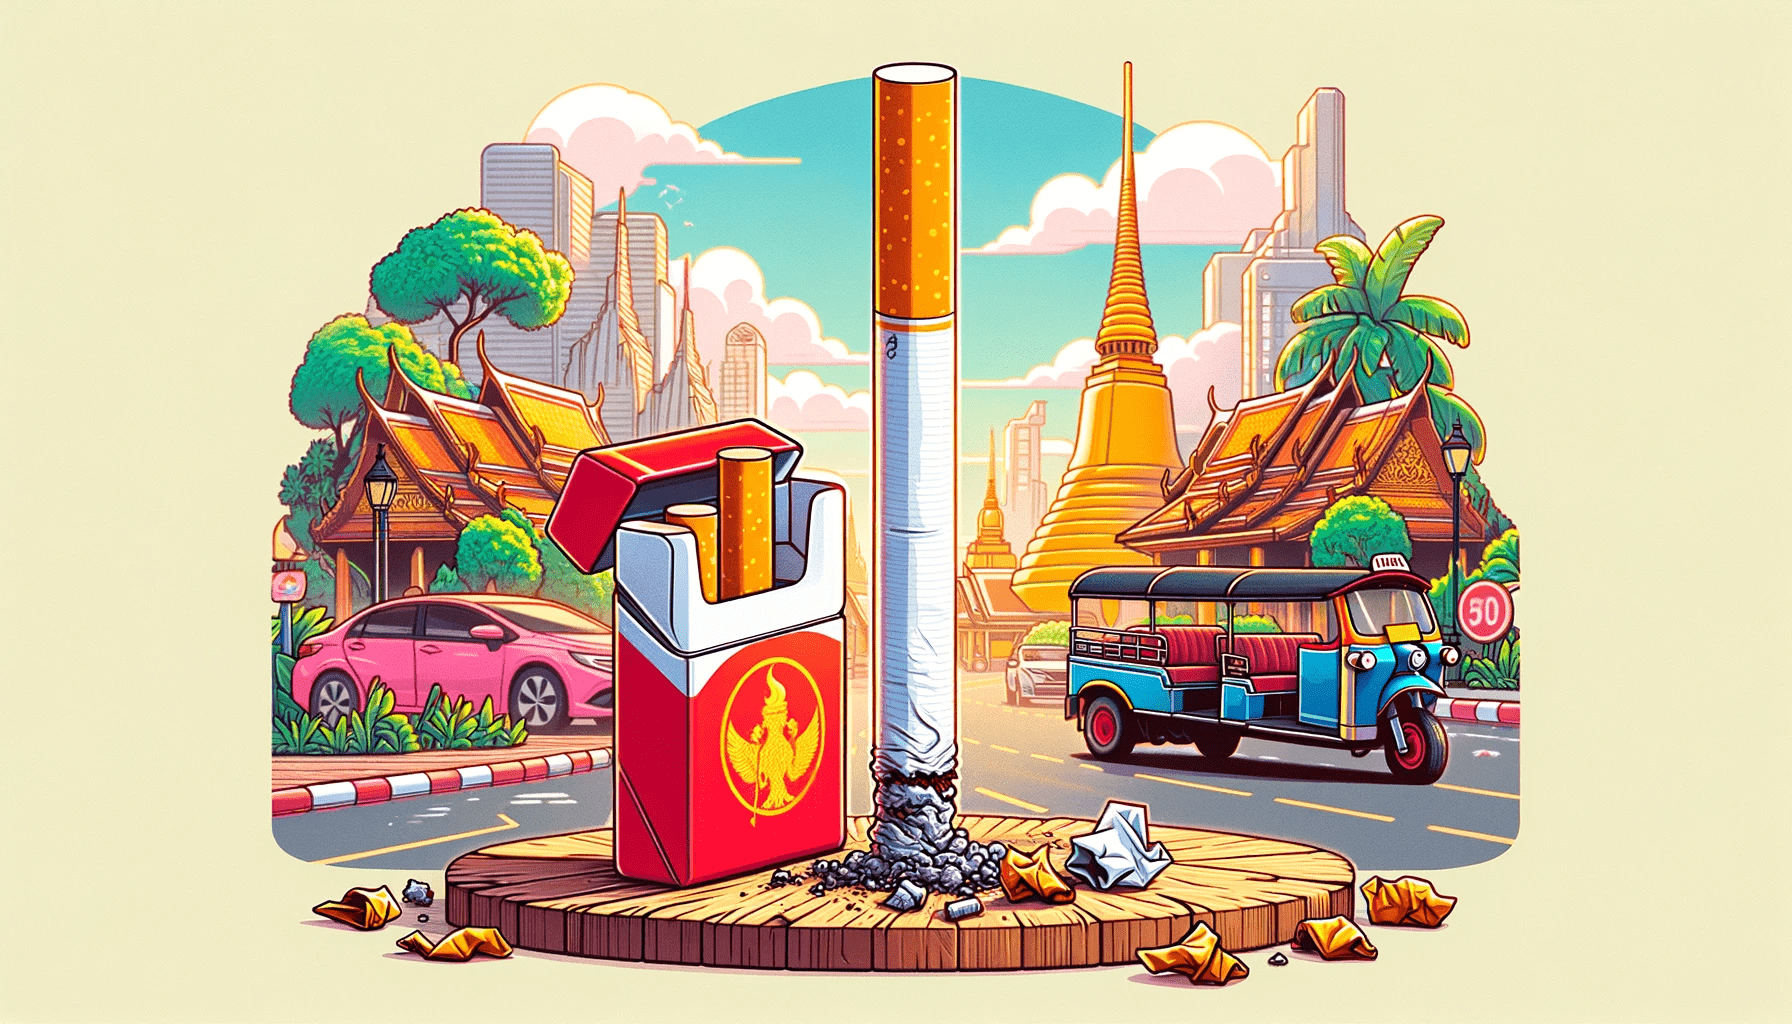 การเลิกสูบบุหรี่ในกรุงเทพฯ - บุหรี่กับไฟแช็ก